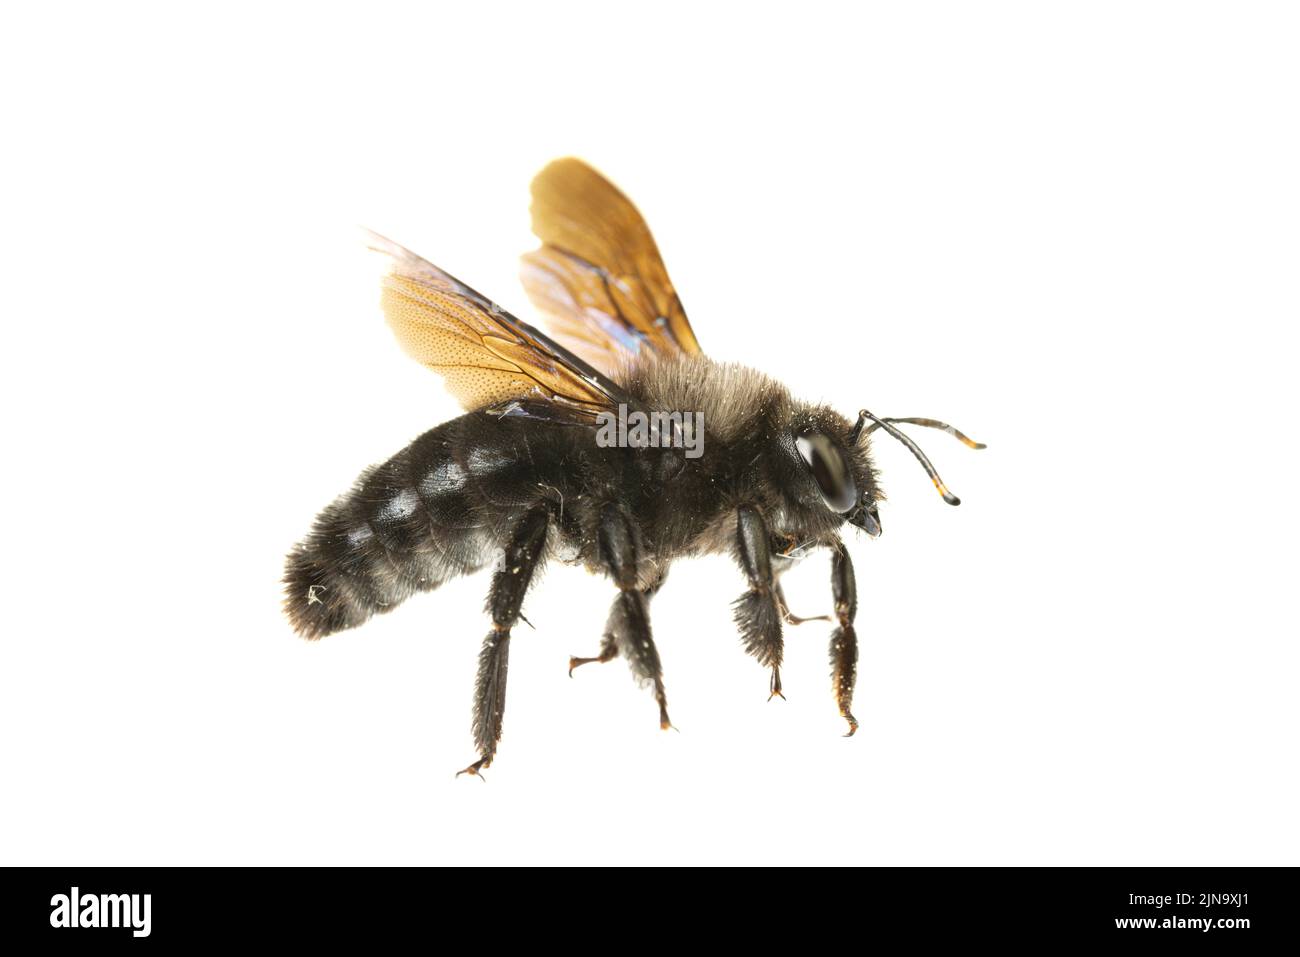 Insectos de europa - Abejas: Vista lateral macro de abeja carpintero violeta macho (Xylocopa violacea german Blauschwarze Holzbiene) aislada sobre fondo blanco Foto de stock